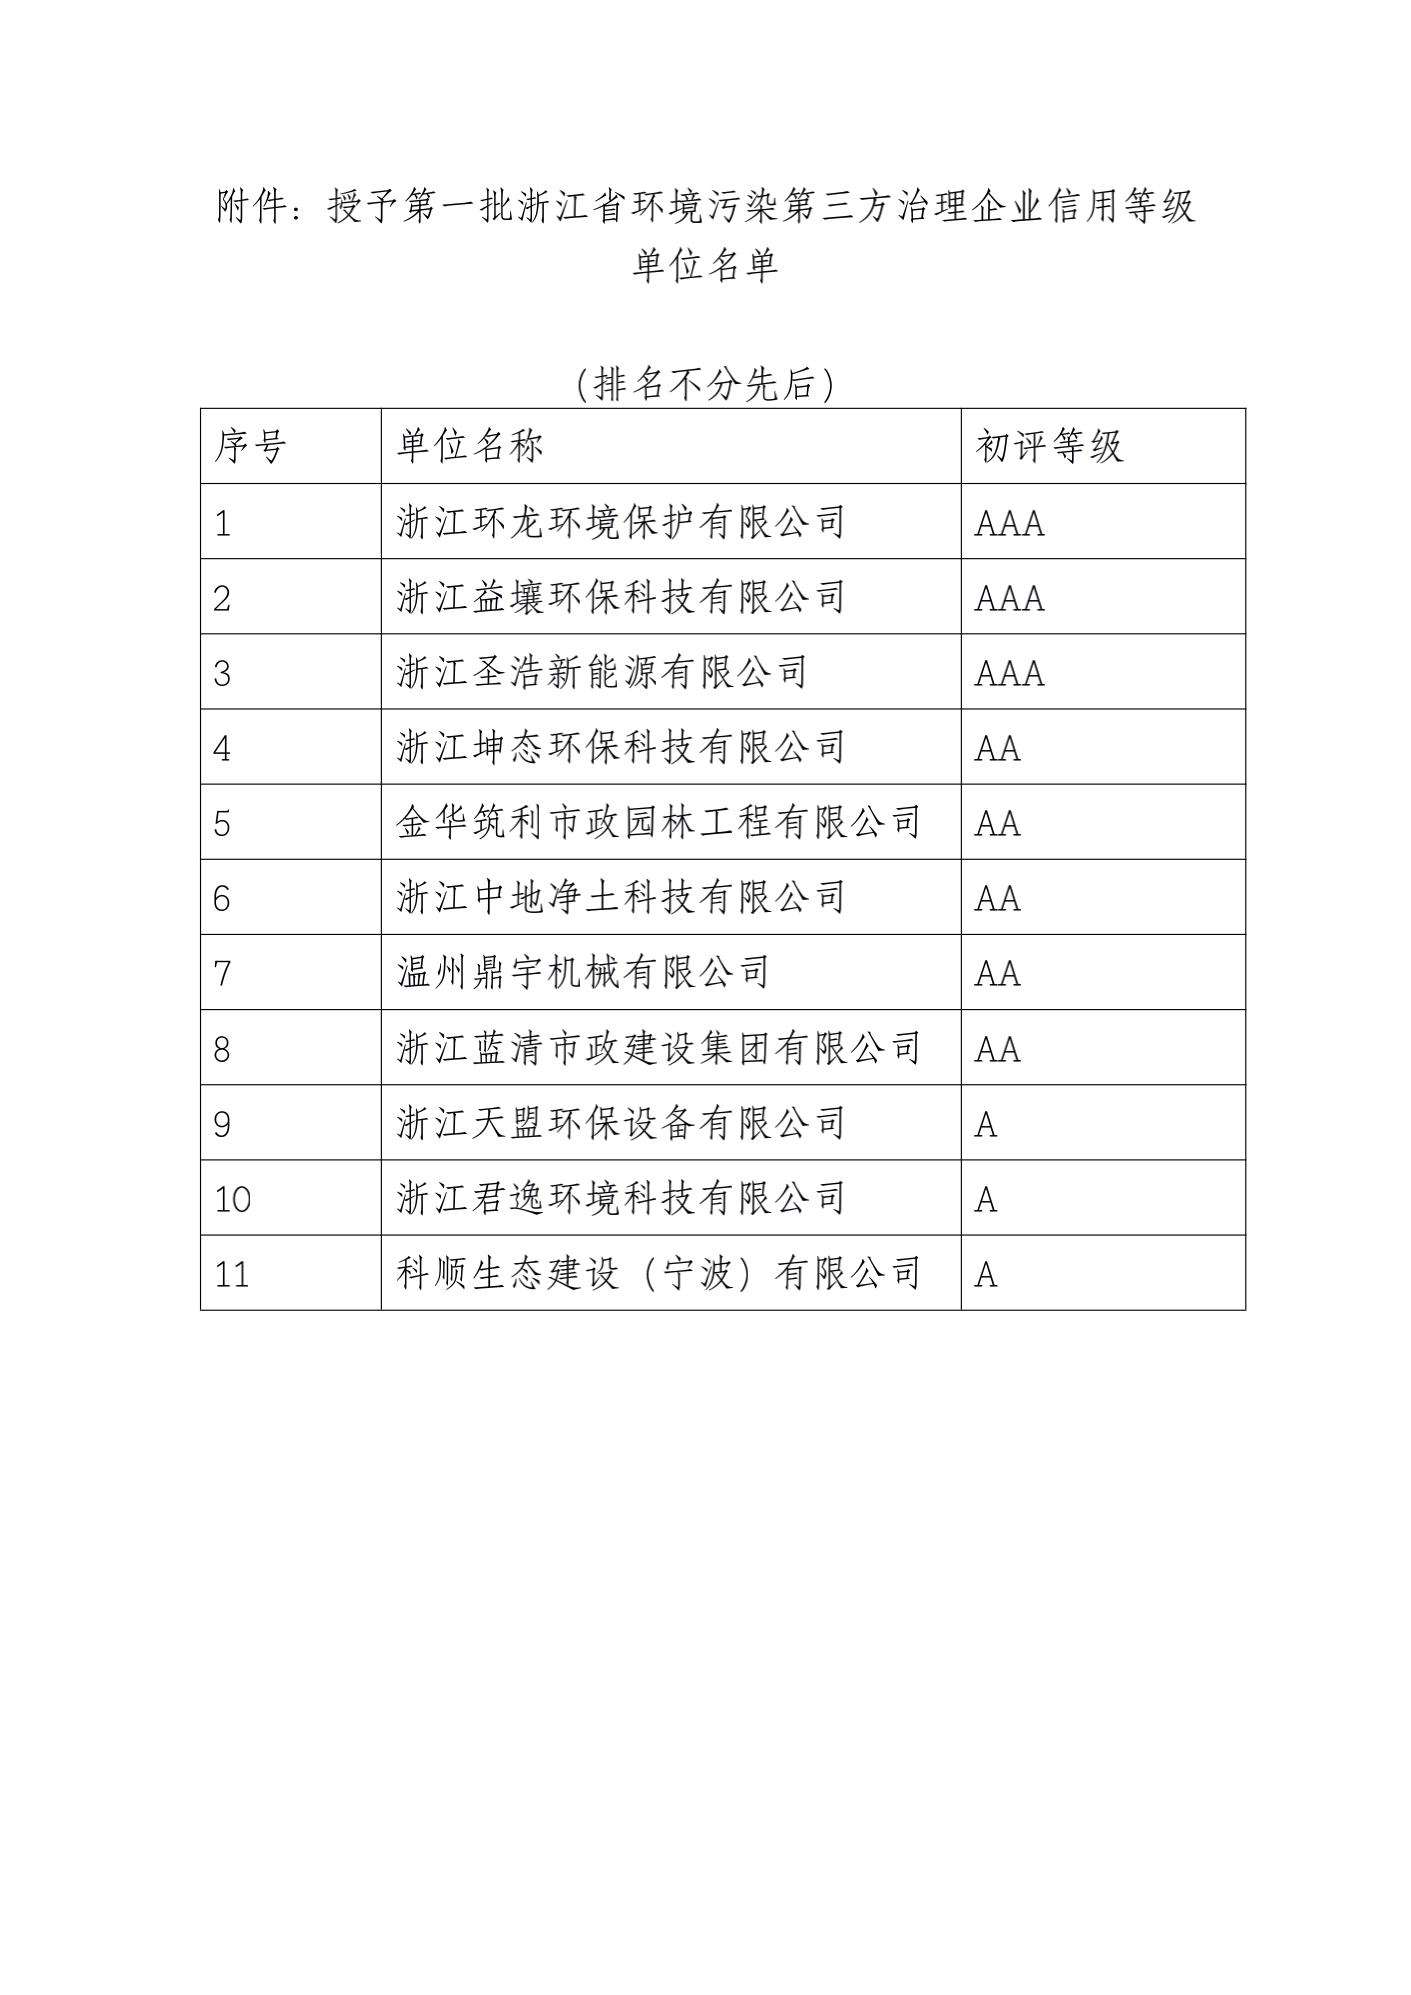 26关于公示2020年度第一批浙江省环境污染第三方治理企业信用等级评价结果的通知(5-20)_02.png